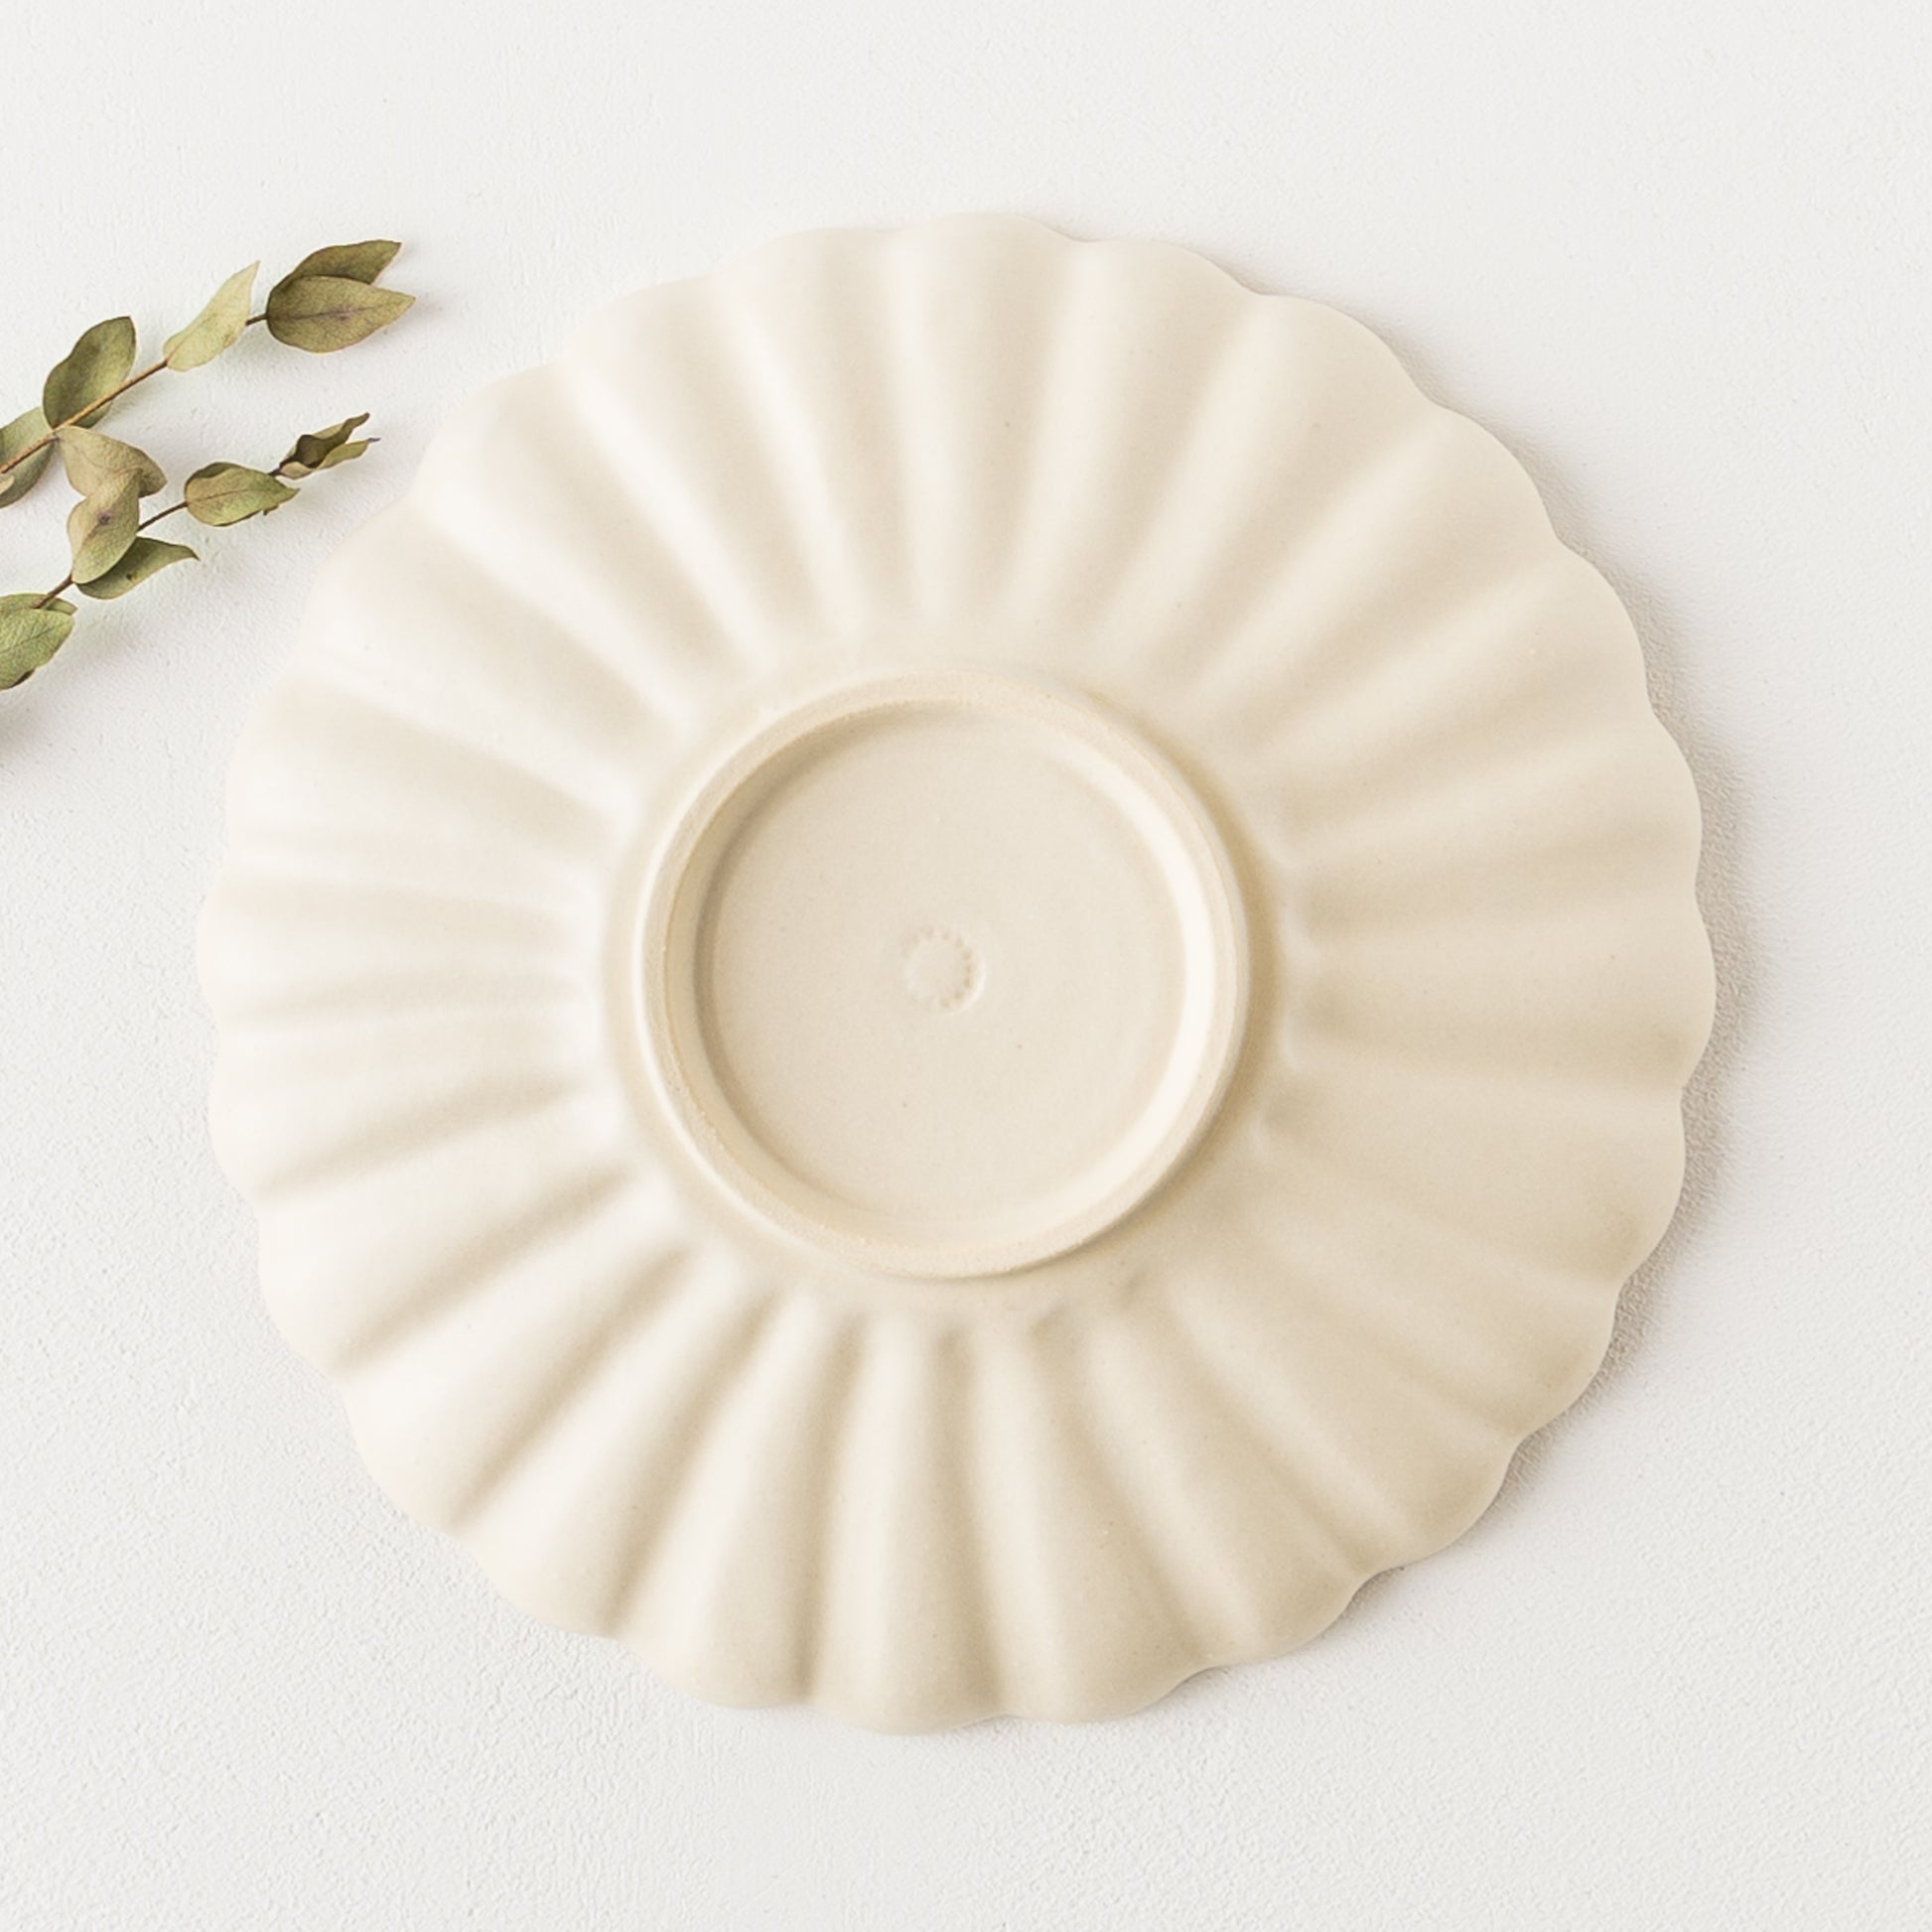 温もりを感じる白が素敵なyoshida potteryの輪花皿